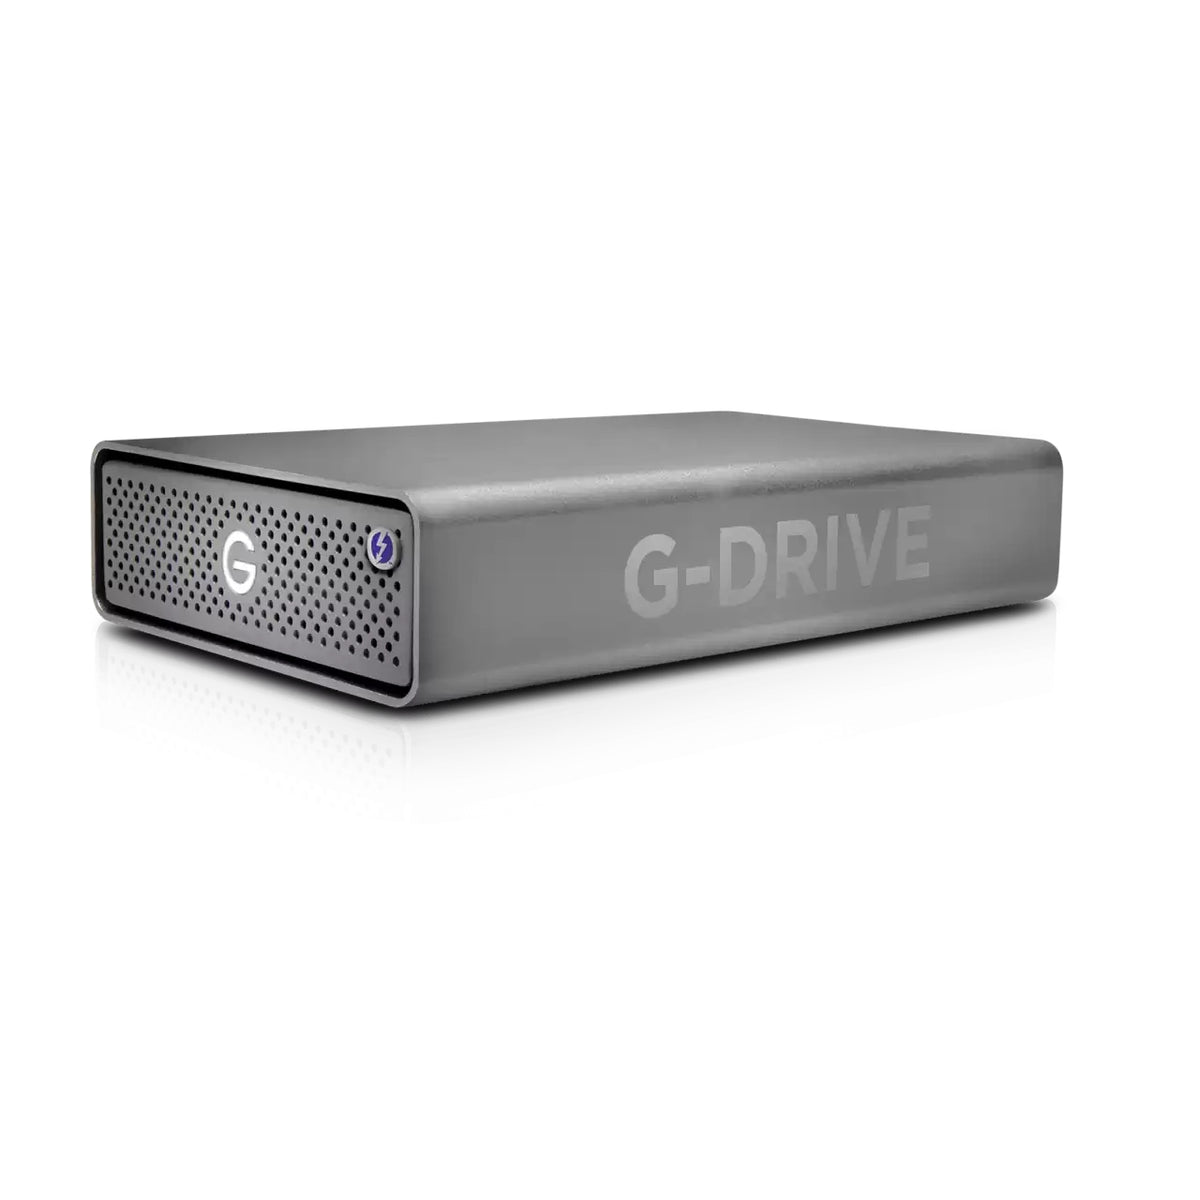 SanDisk Professional G-DRIVE PRO - Disco duro - 18 TB - Externo (sobremesa) - USB 3.2 Gen 1 / Thunderbolt 3 (conector USB C) - 7200 rpm - Gris espacial